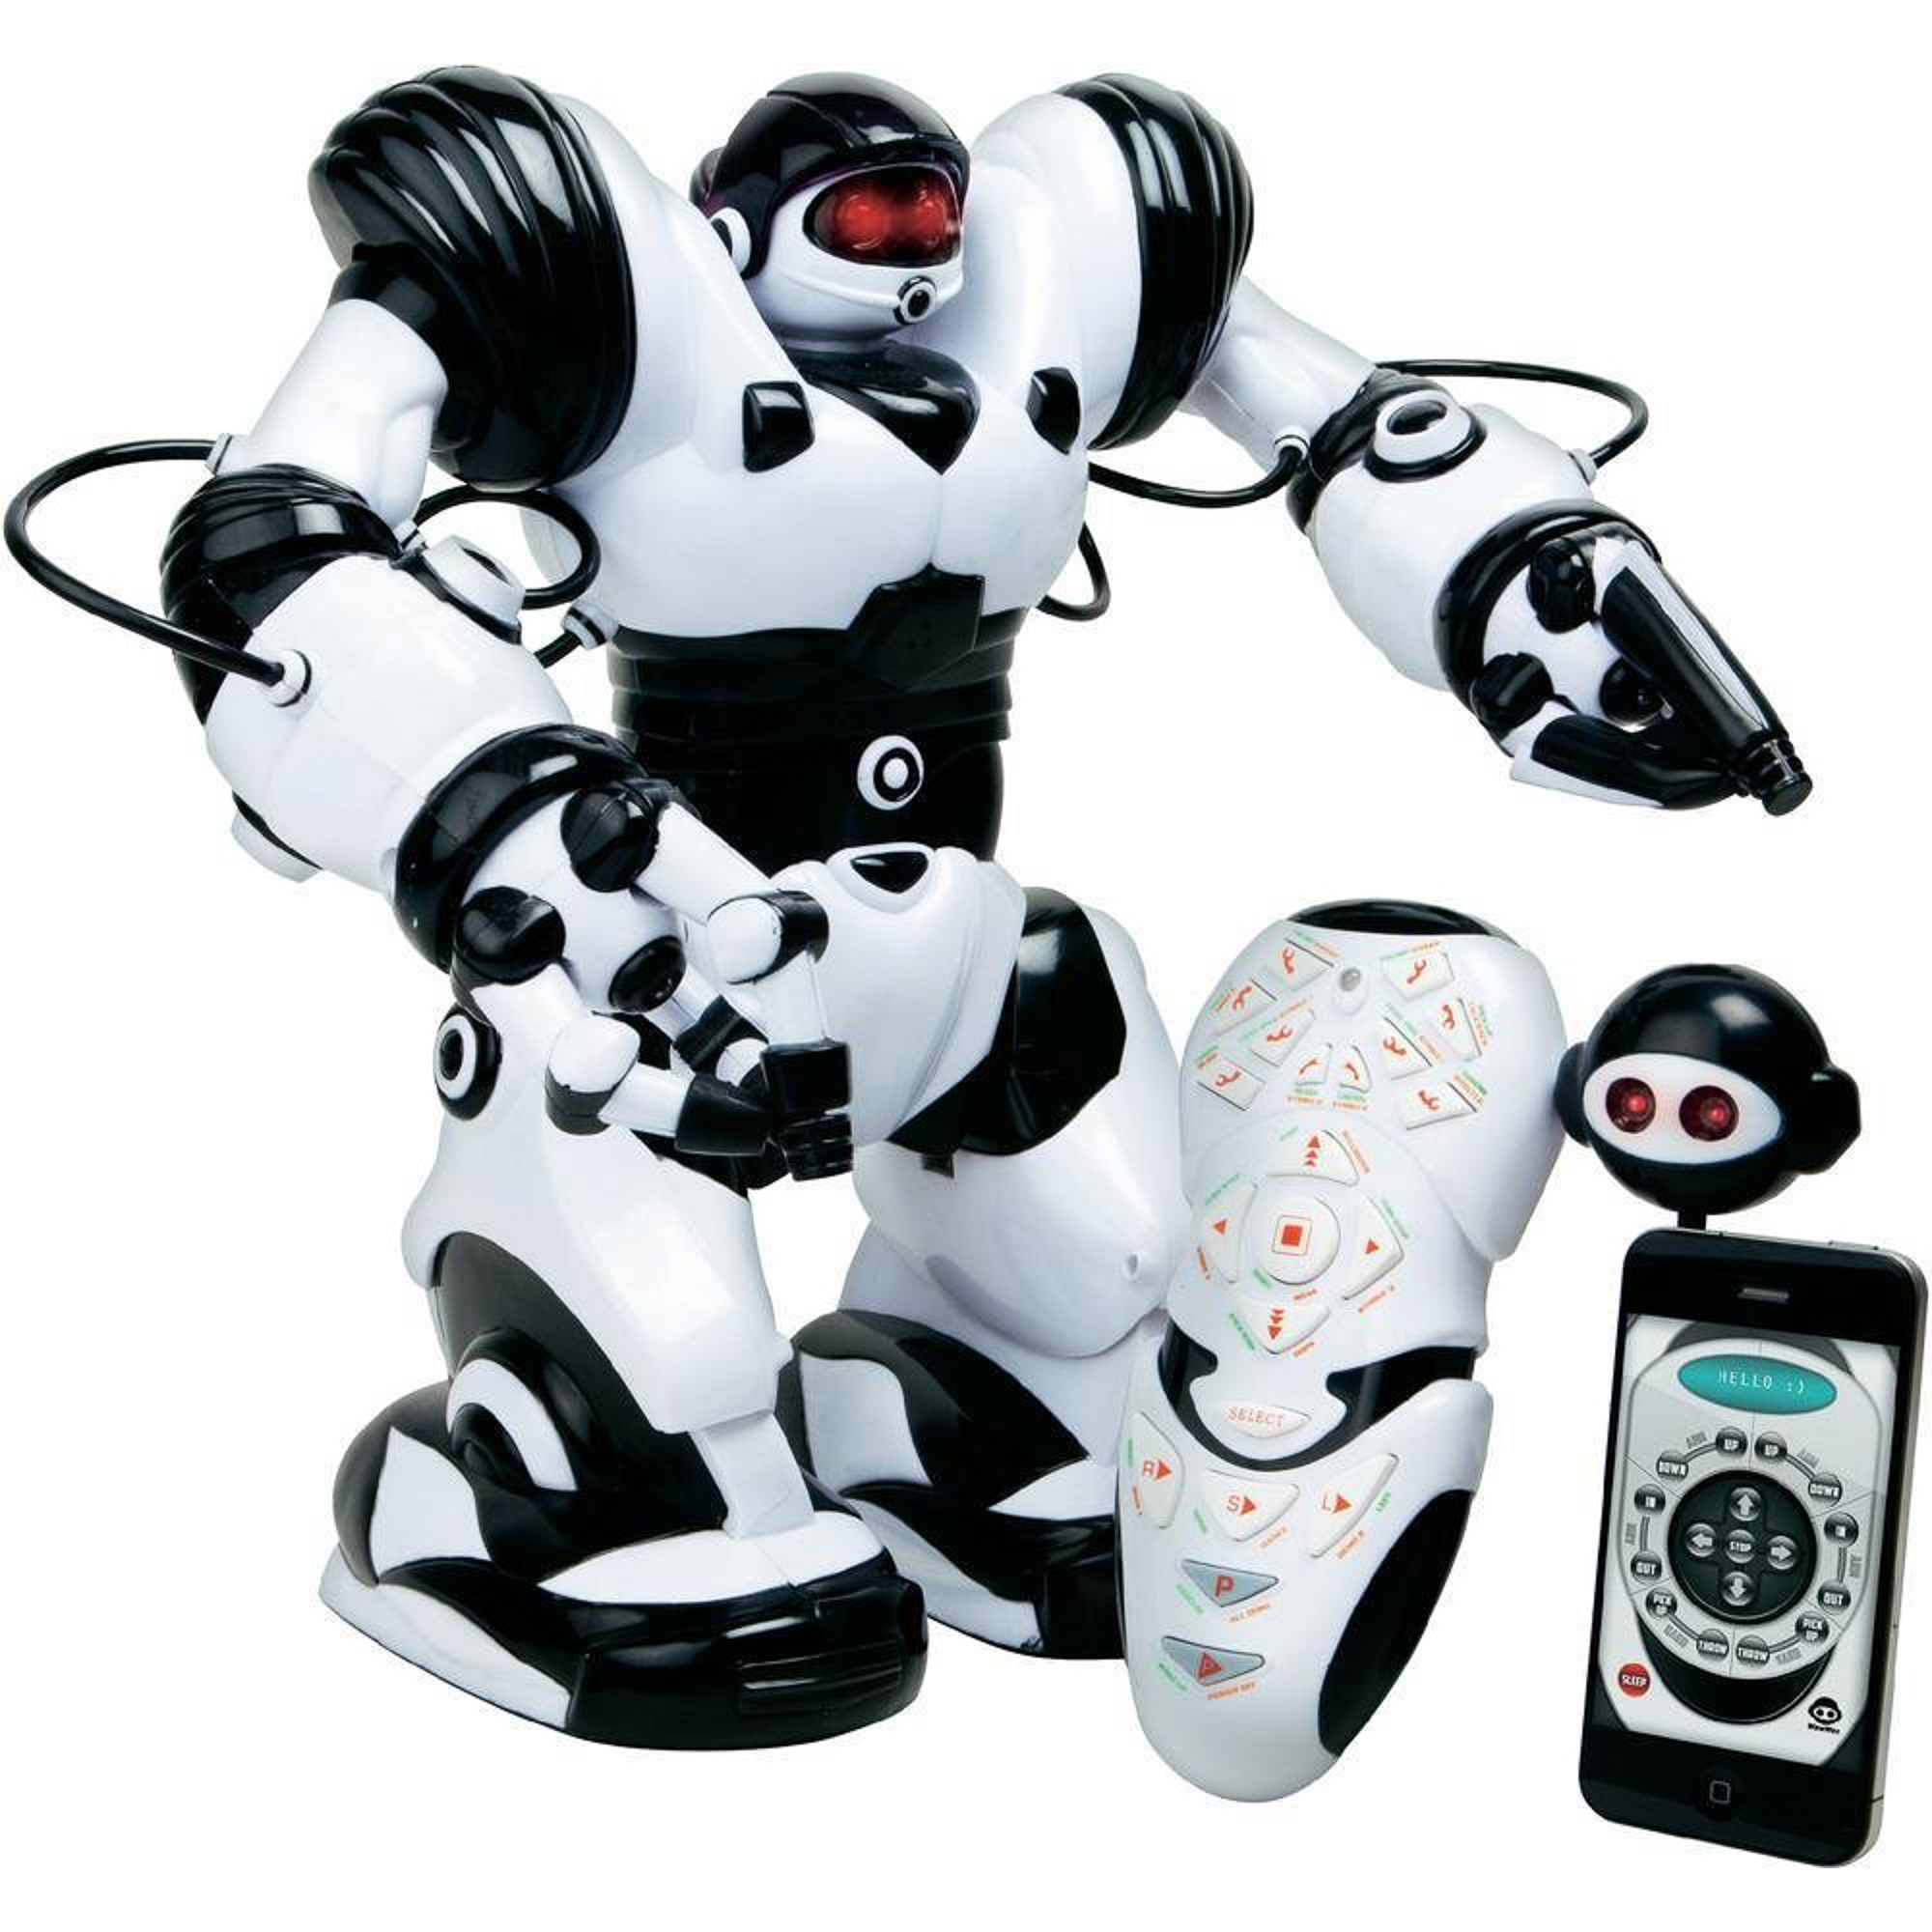 Игрушки нового поколения. Робот WOWWEE Robosapien 8006. WOWWEE робот Робосапиен. Робот WOWWEE Robosapien 2. Робот WOWWEE Robosapien пульт Ду.